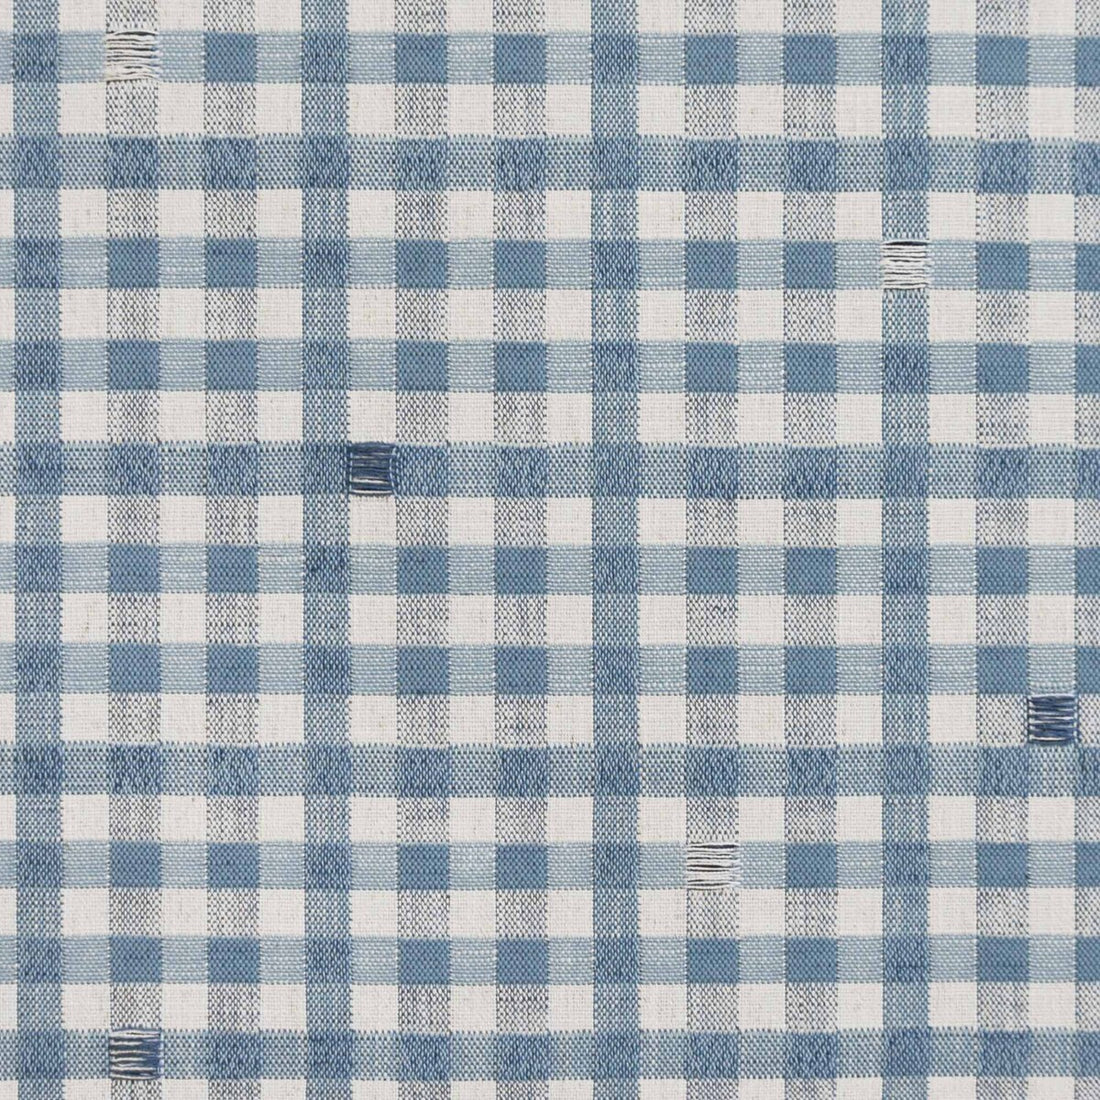 Trajano fabric in azul claro color - pattern LCT1130.008.0 - by Gaston y Daniela in the Lorenzo Castillo IX Hesperia collection